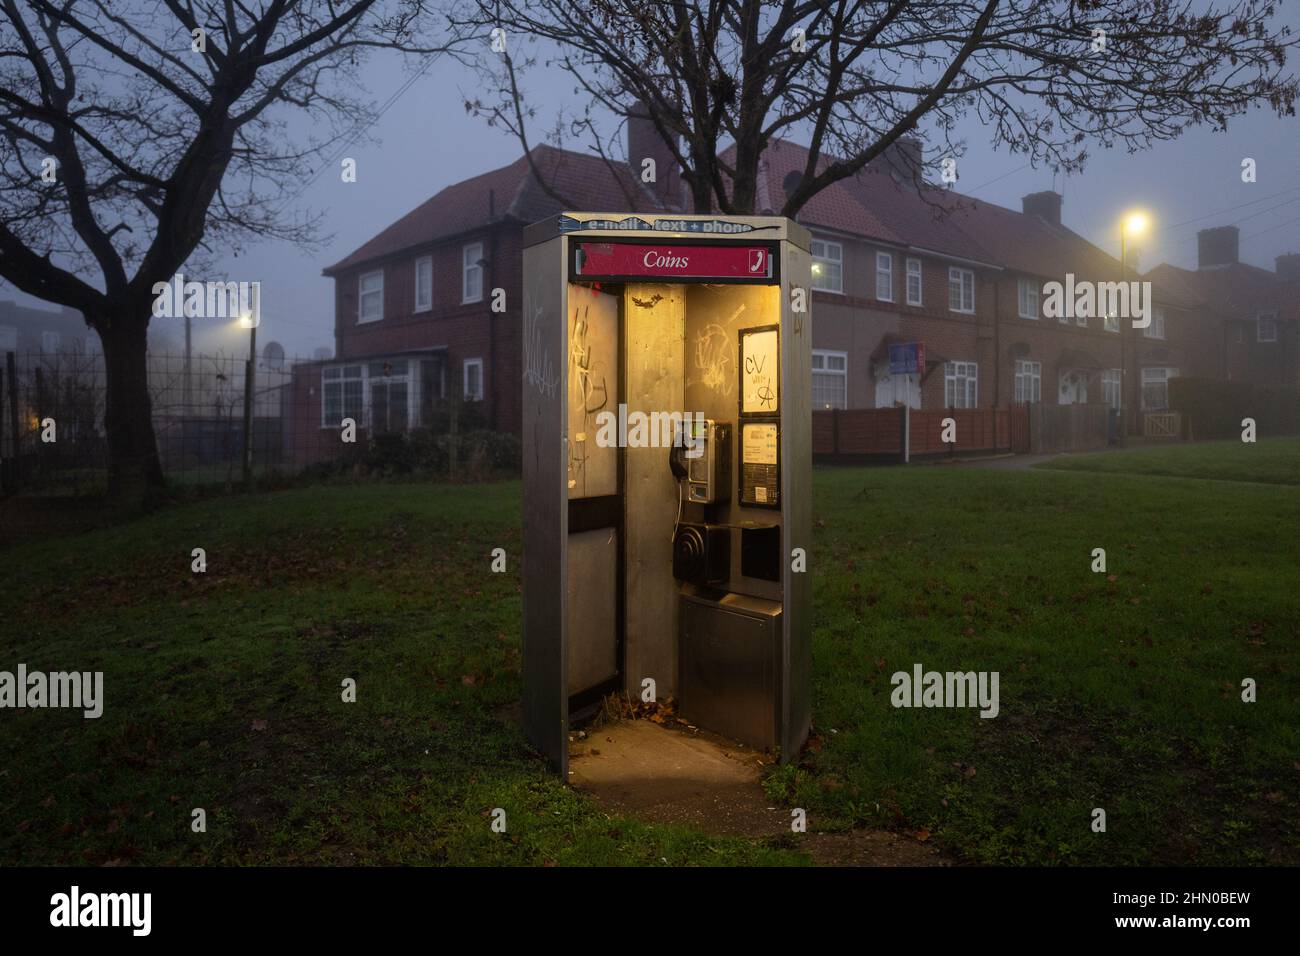 Public Call Box von British Telecom. Das Foto wurde früh an einem feuchten nebligen Morgen in Burnt Oak, London, UK, aufgenommen Stockfoto